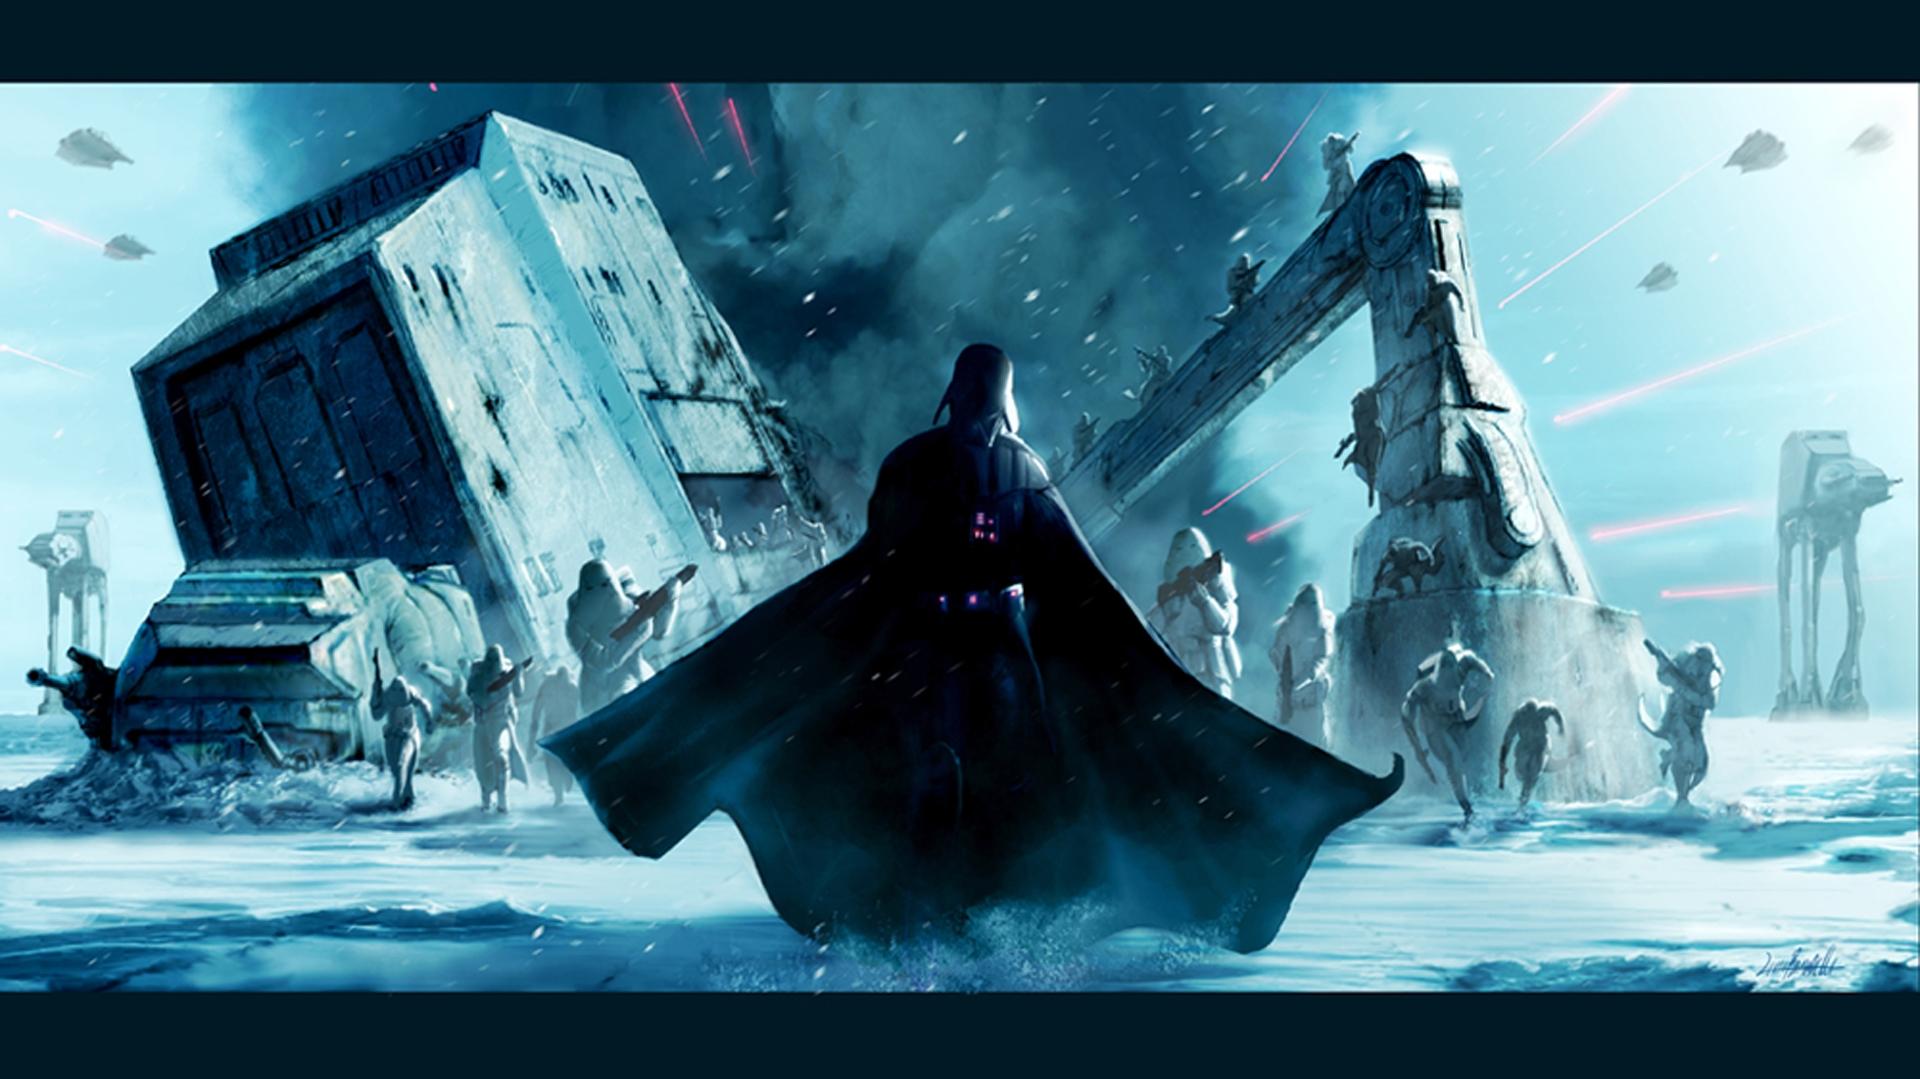 Star Wars Darth Vader Hoth HD Wallpaper FullHDwpp